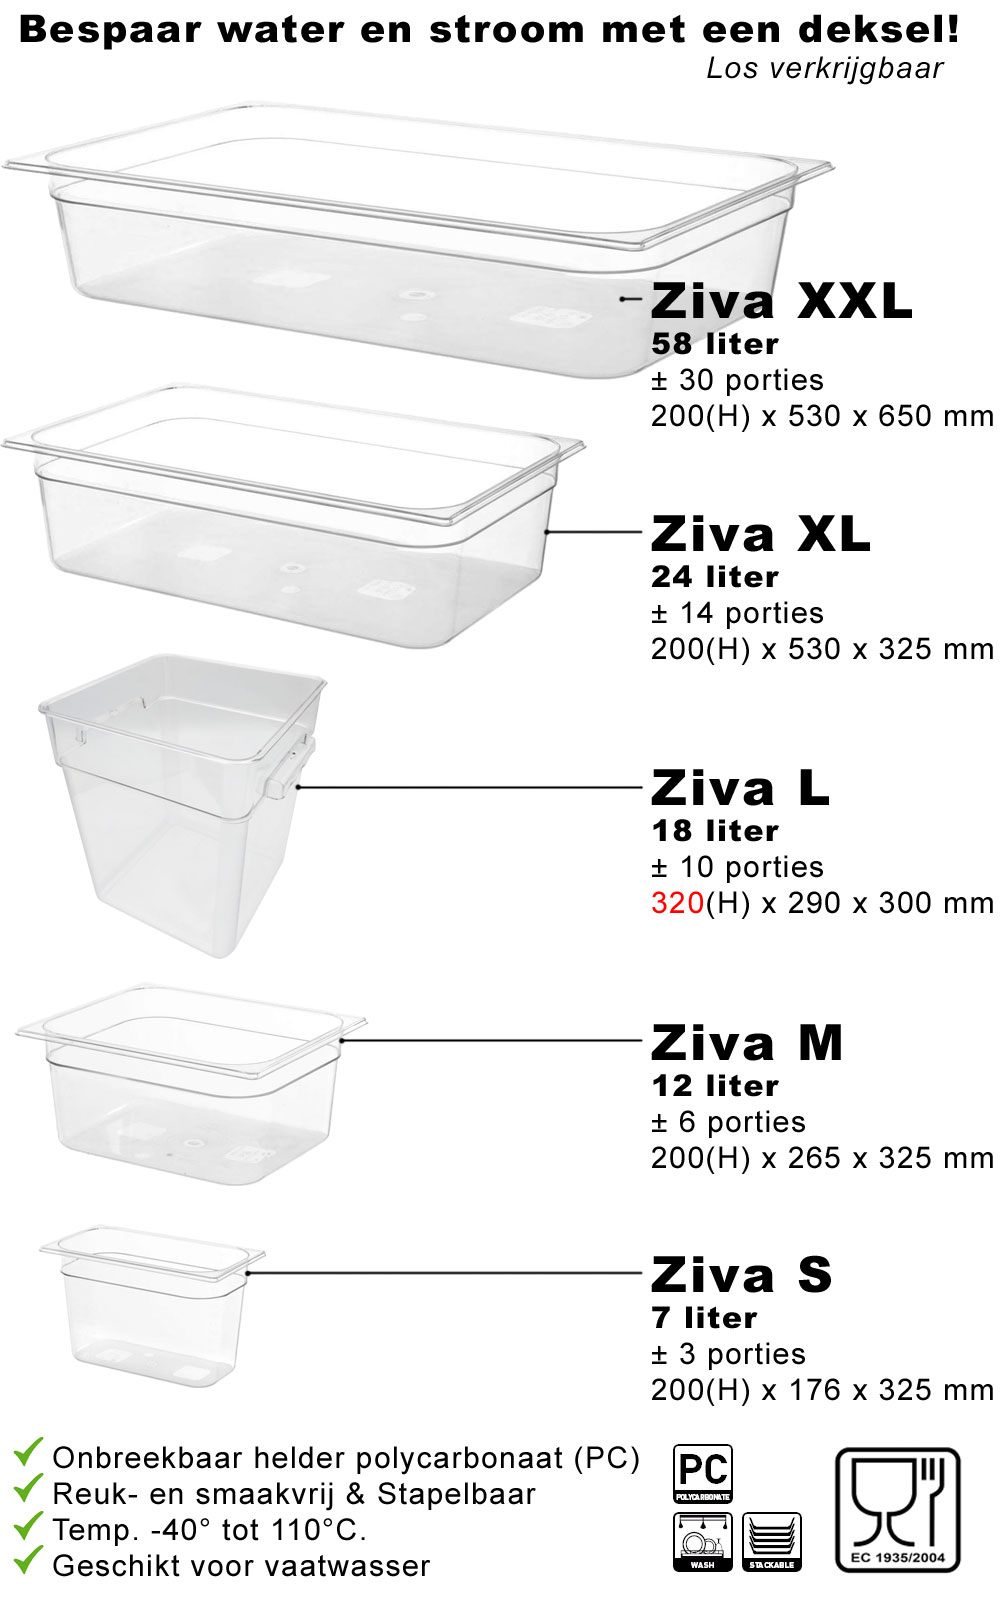 Wartmann 1507 (1300W) + Ziva OneTouch + 7 liter container package[tweedekans]